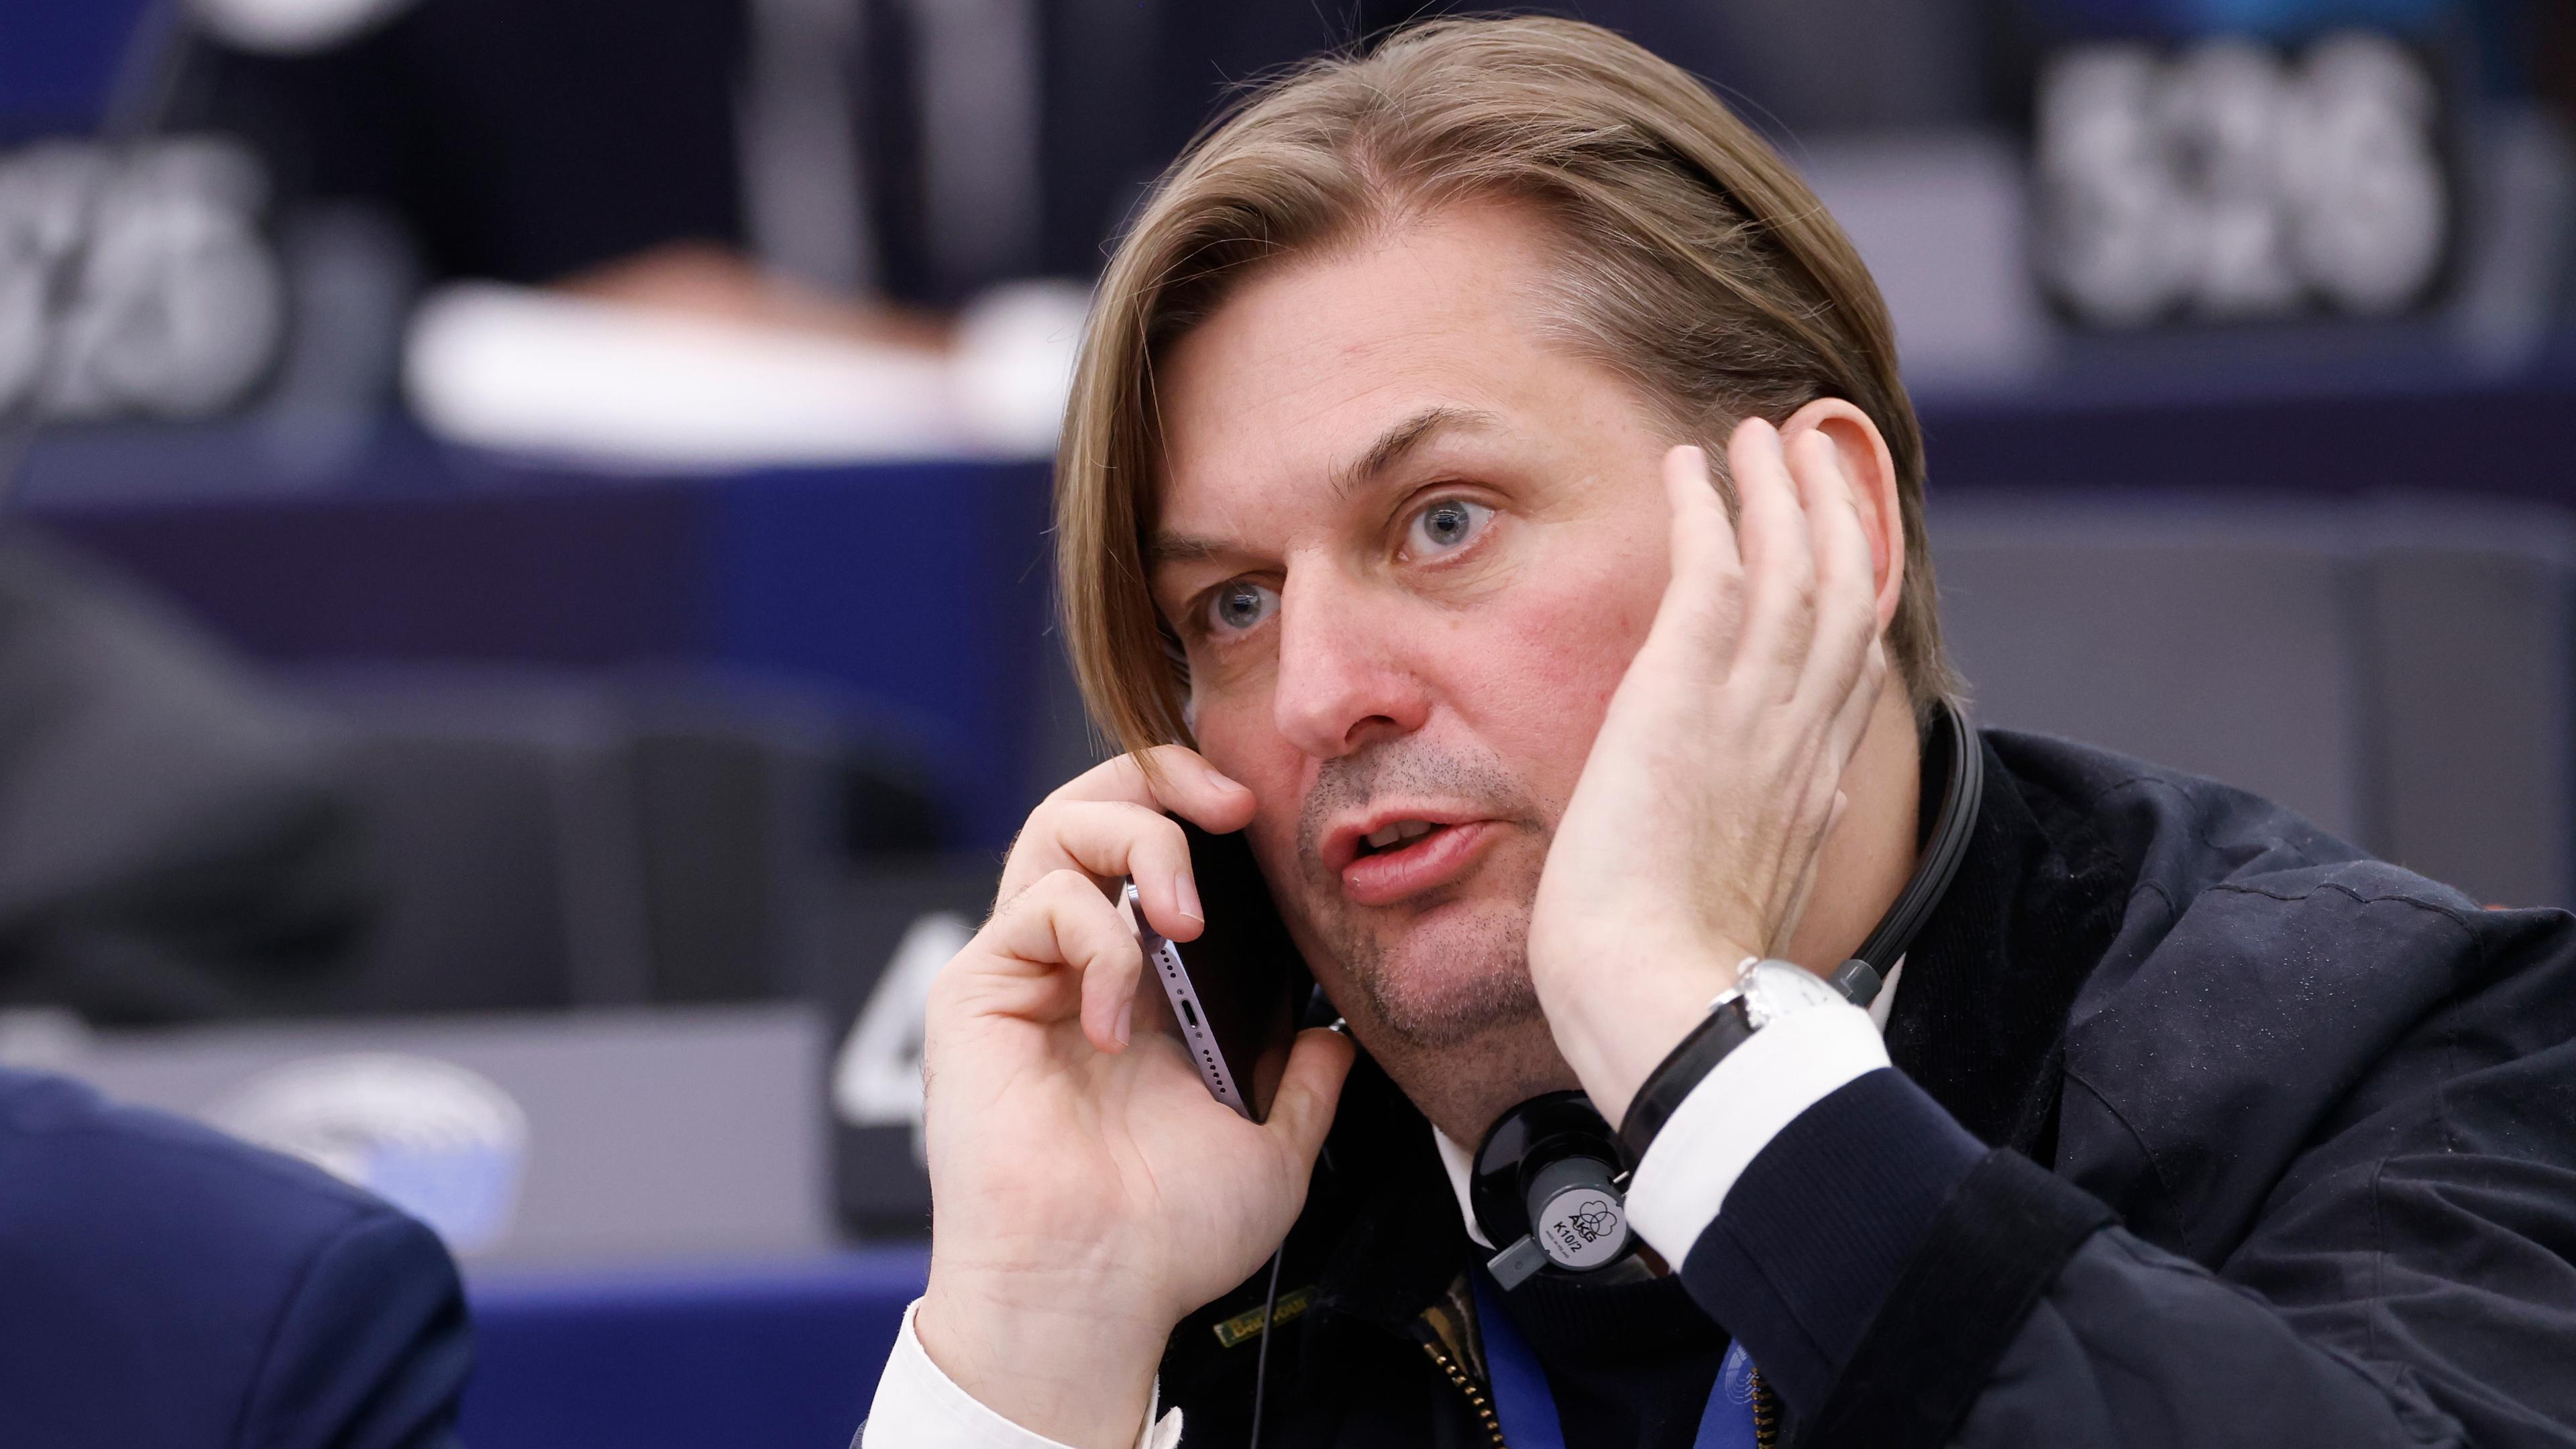 Frankreich, Straßburg: Maximilian Krah von der Alternative für Deutschland (AfD) telefoniert in einer Sitzung des Europäischen Parlaments teil.